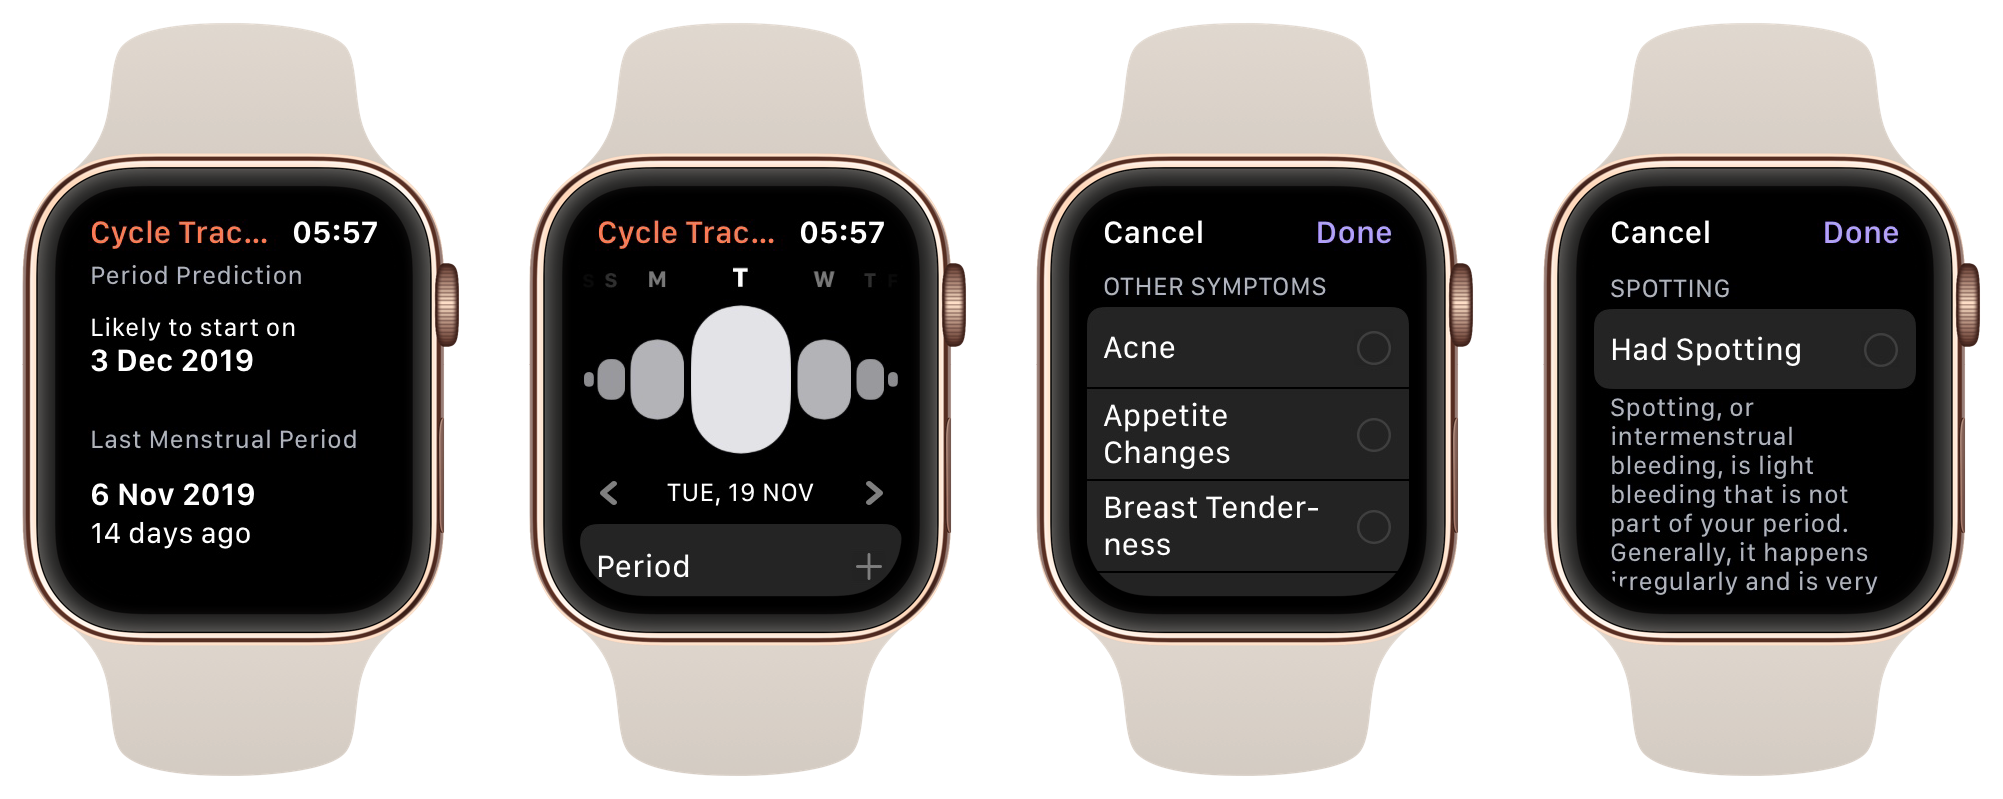 Chytré hodinky Apple Watch Series 7 umí monitorovat menstruační cyklus, takže snadno a rychle najdete vnitřní rovnováhu a klid.